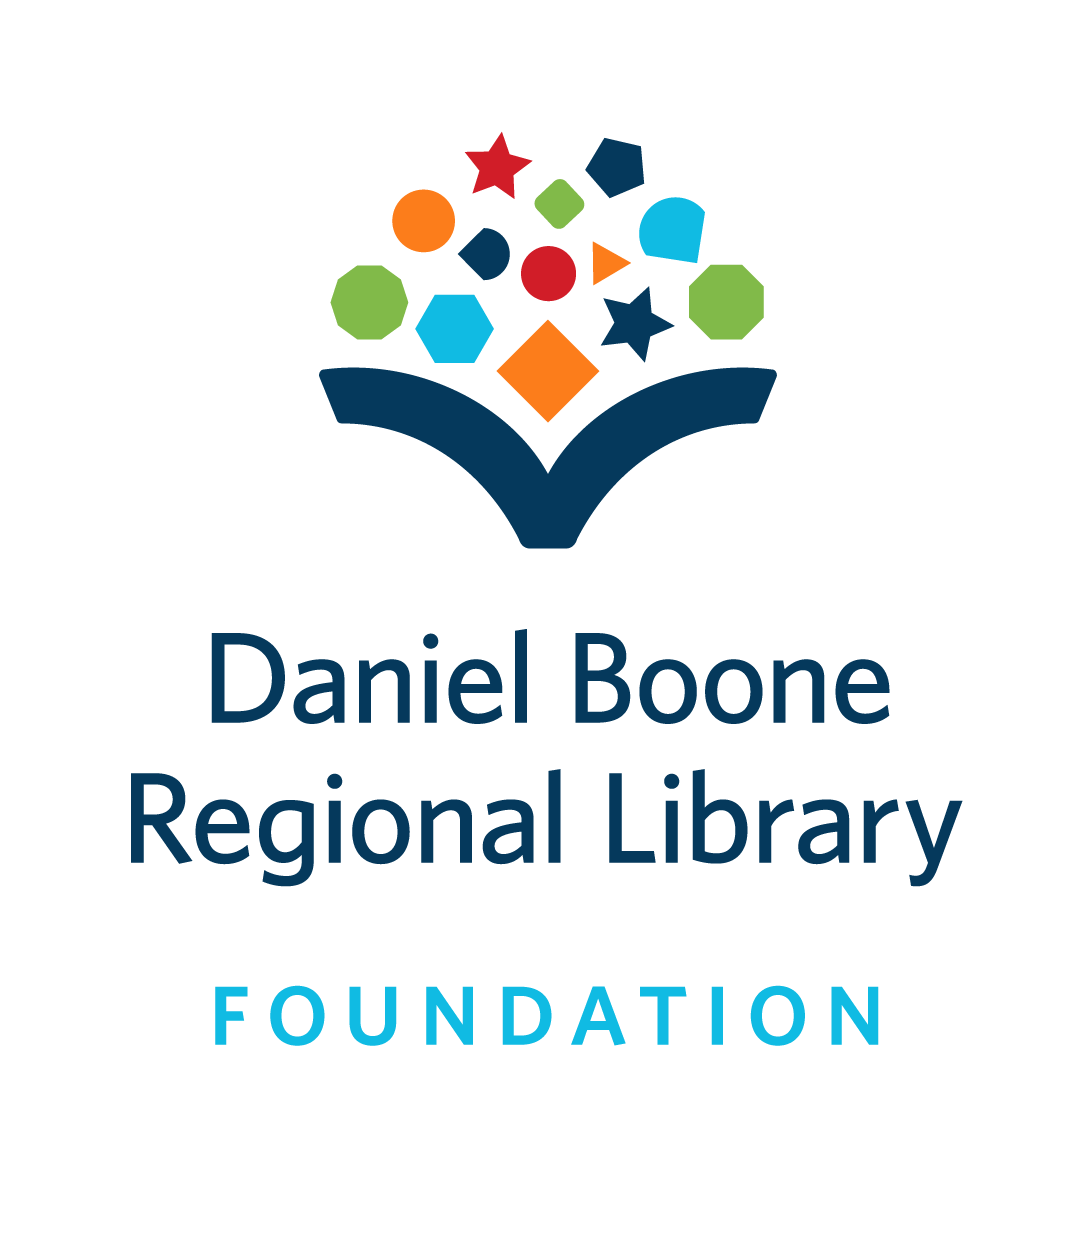 Daniel Boone Regional Library Foundation